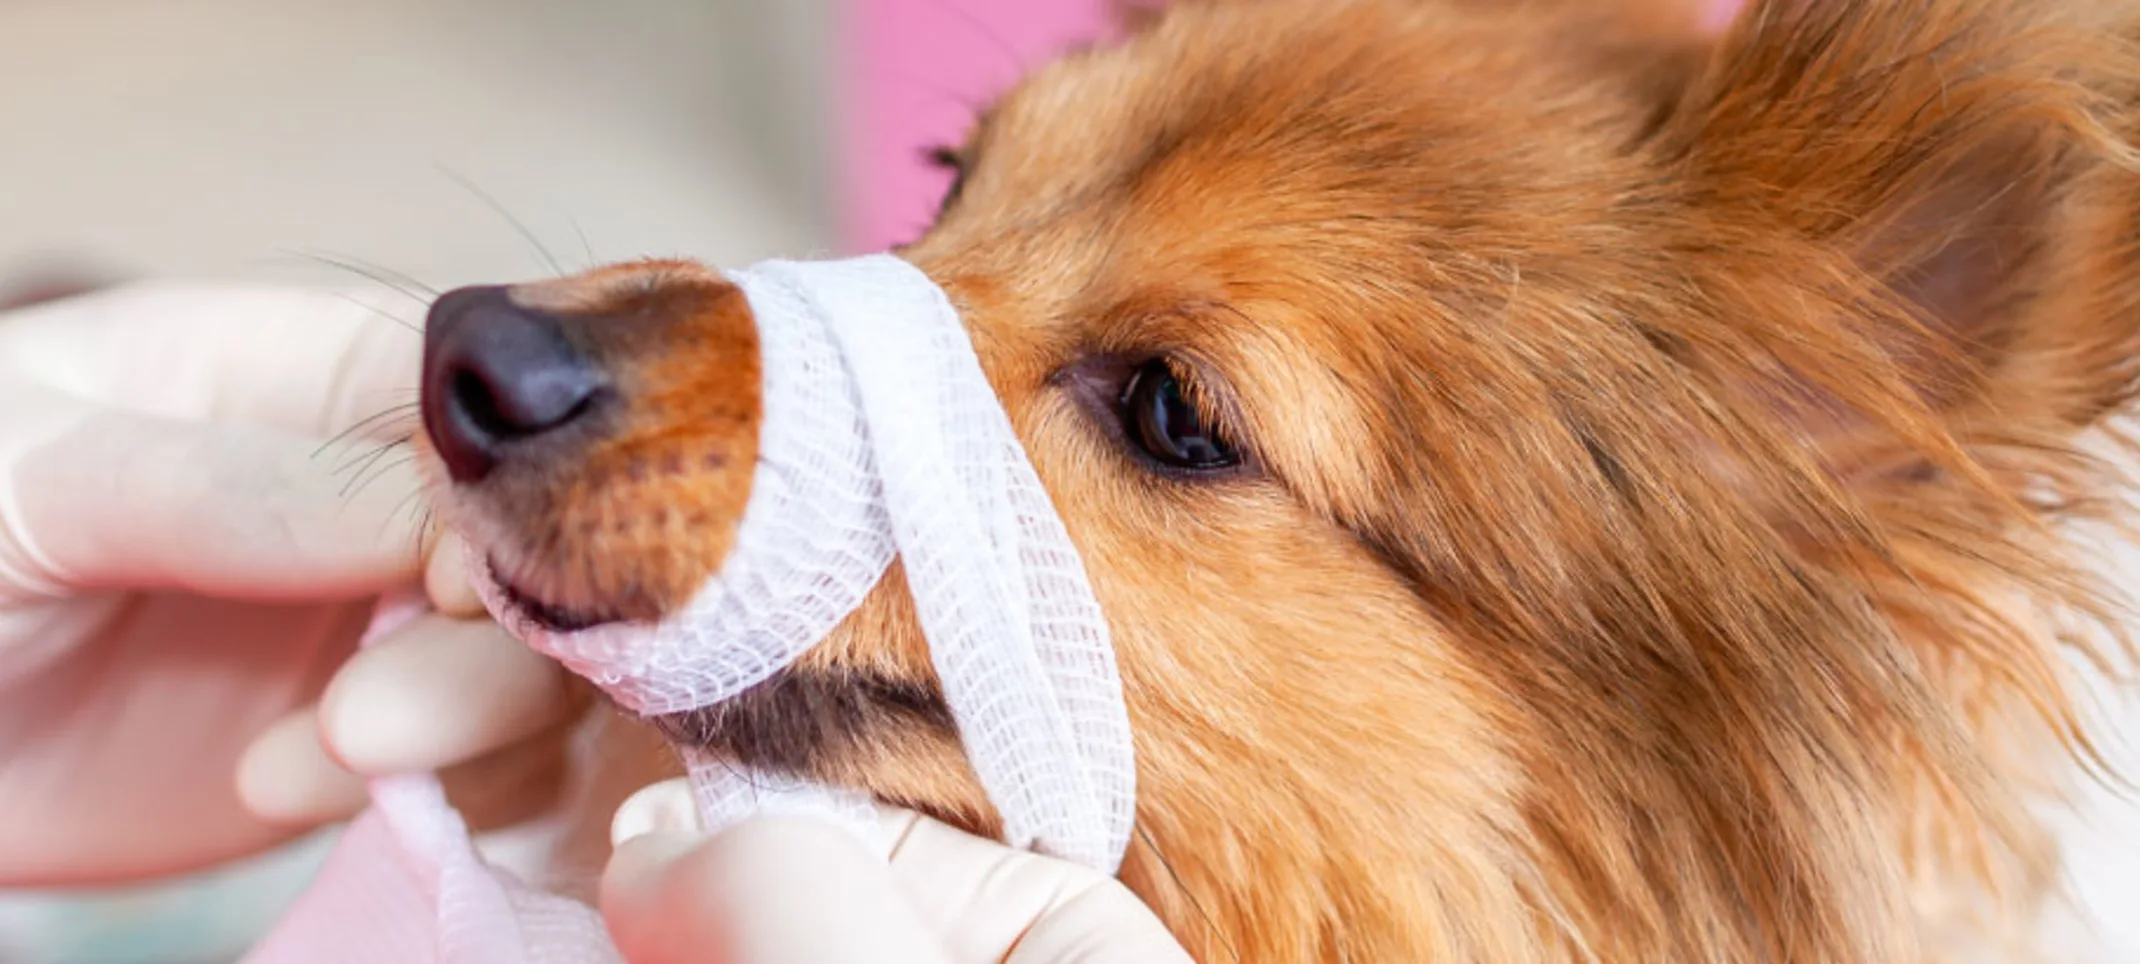 Dog Bandage Emergency Medic